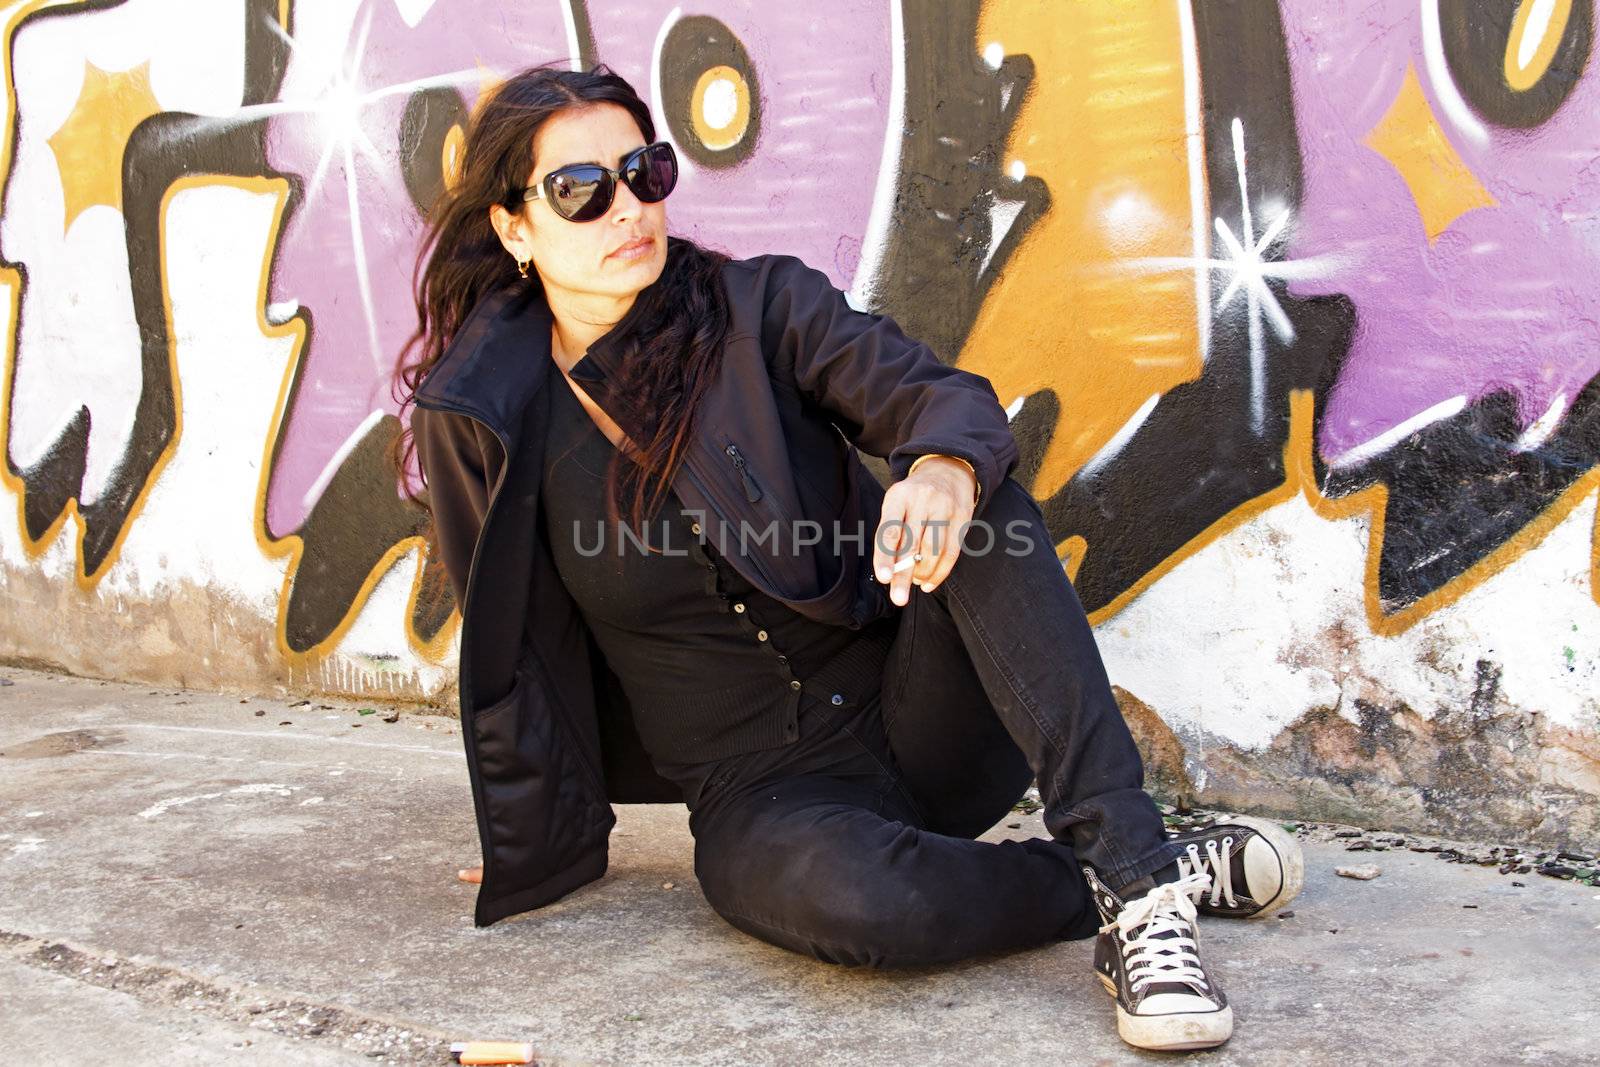 Smoking woman in black at the graffiti brick wall